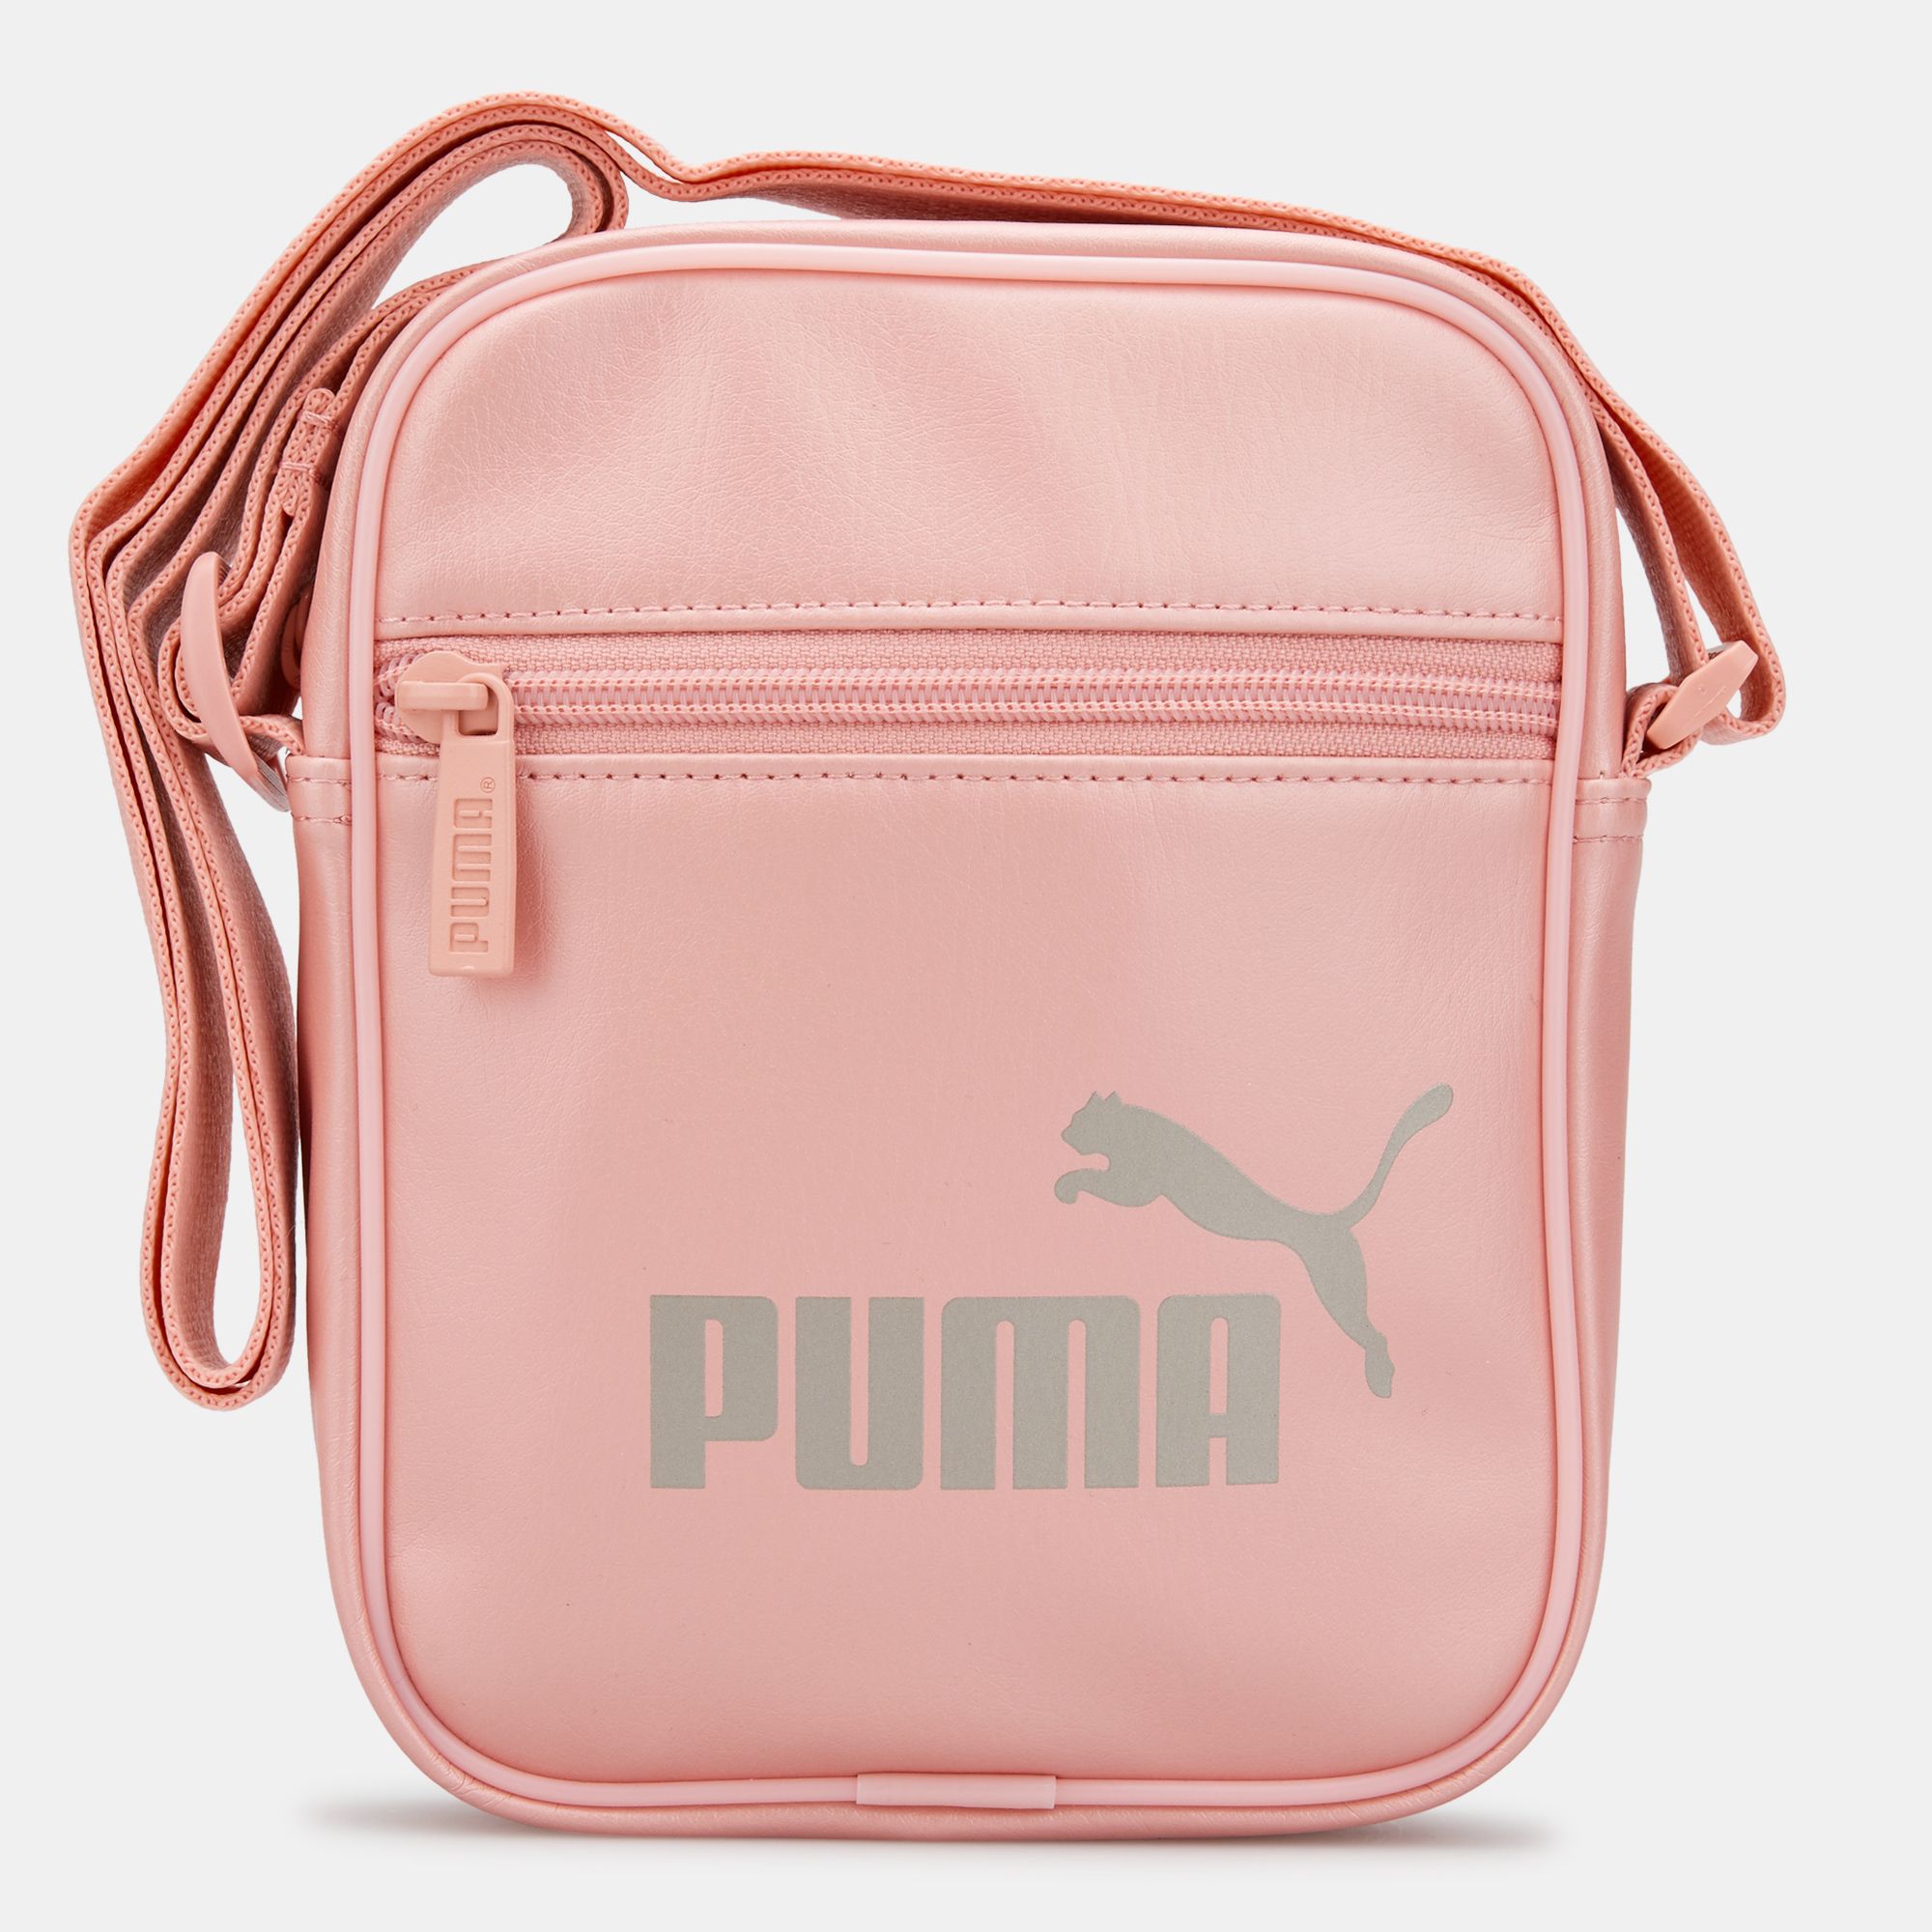 puma satchel bag